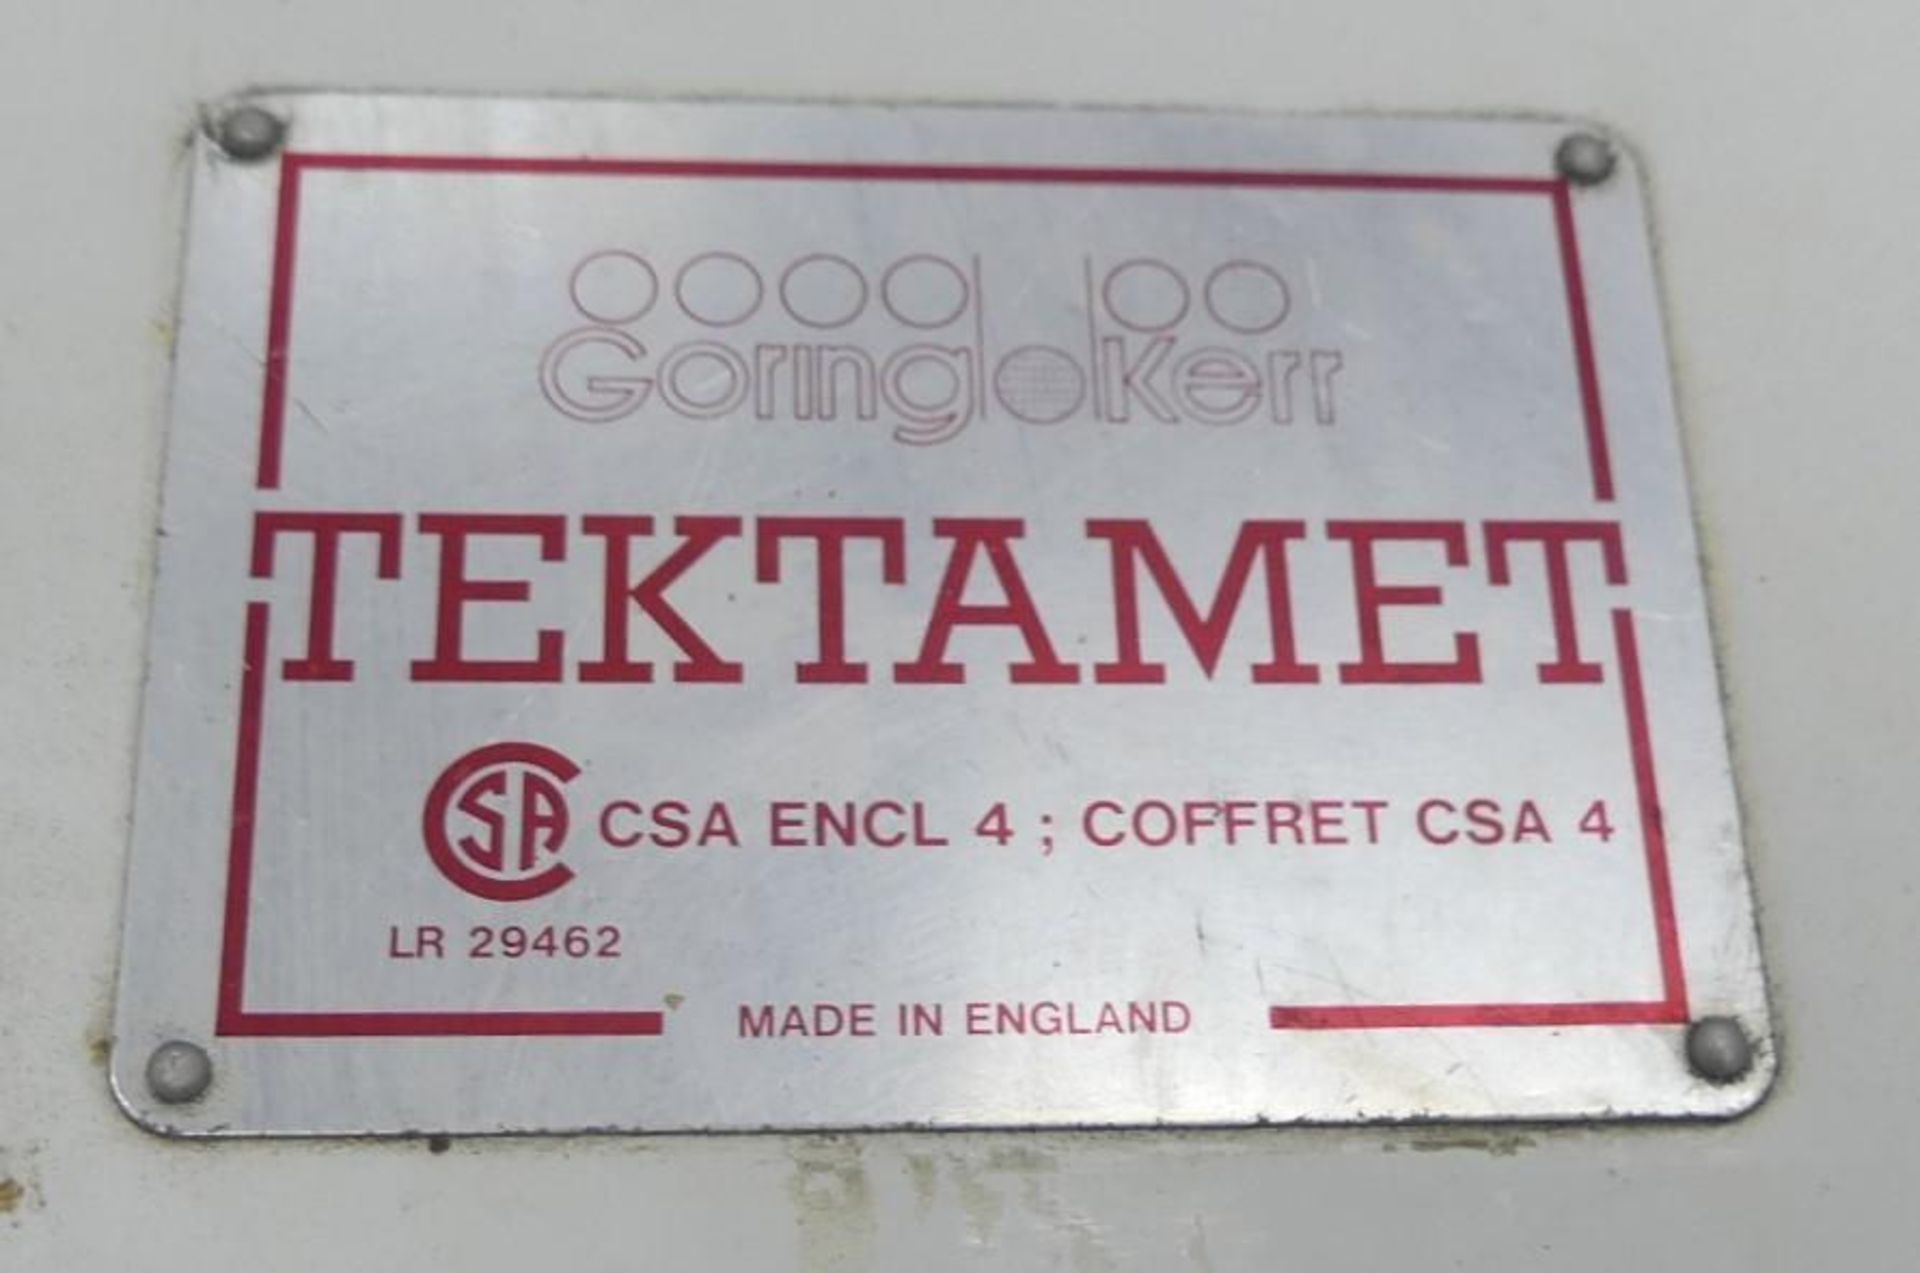 Goring Kerr Tektamet 211 9.75" H by 4.5" W Metal Detector - Image 23 of 24